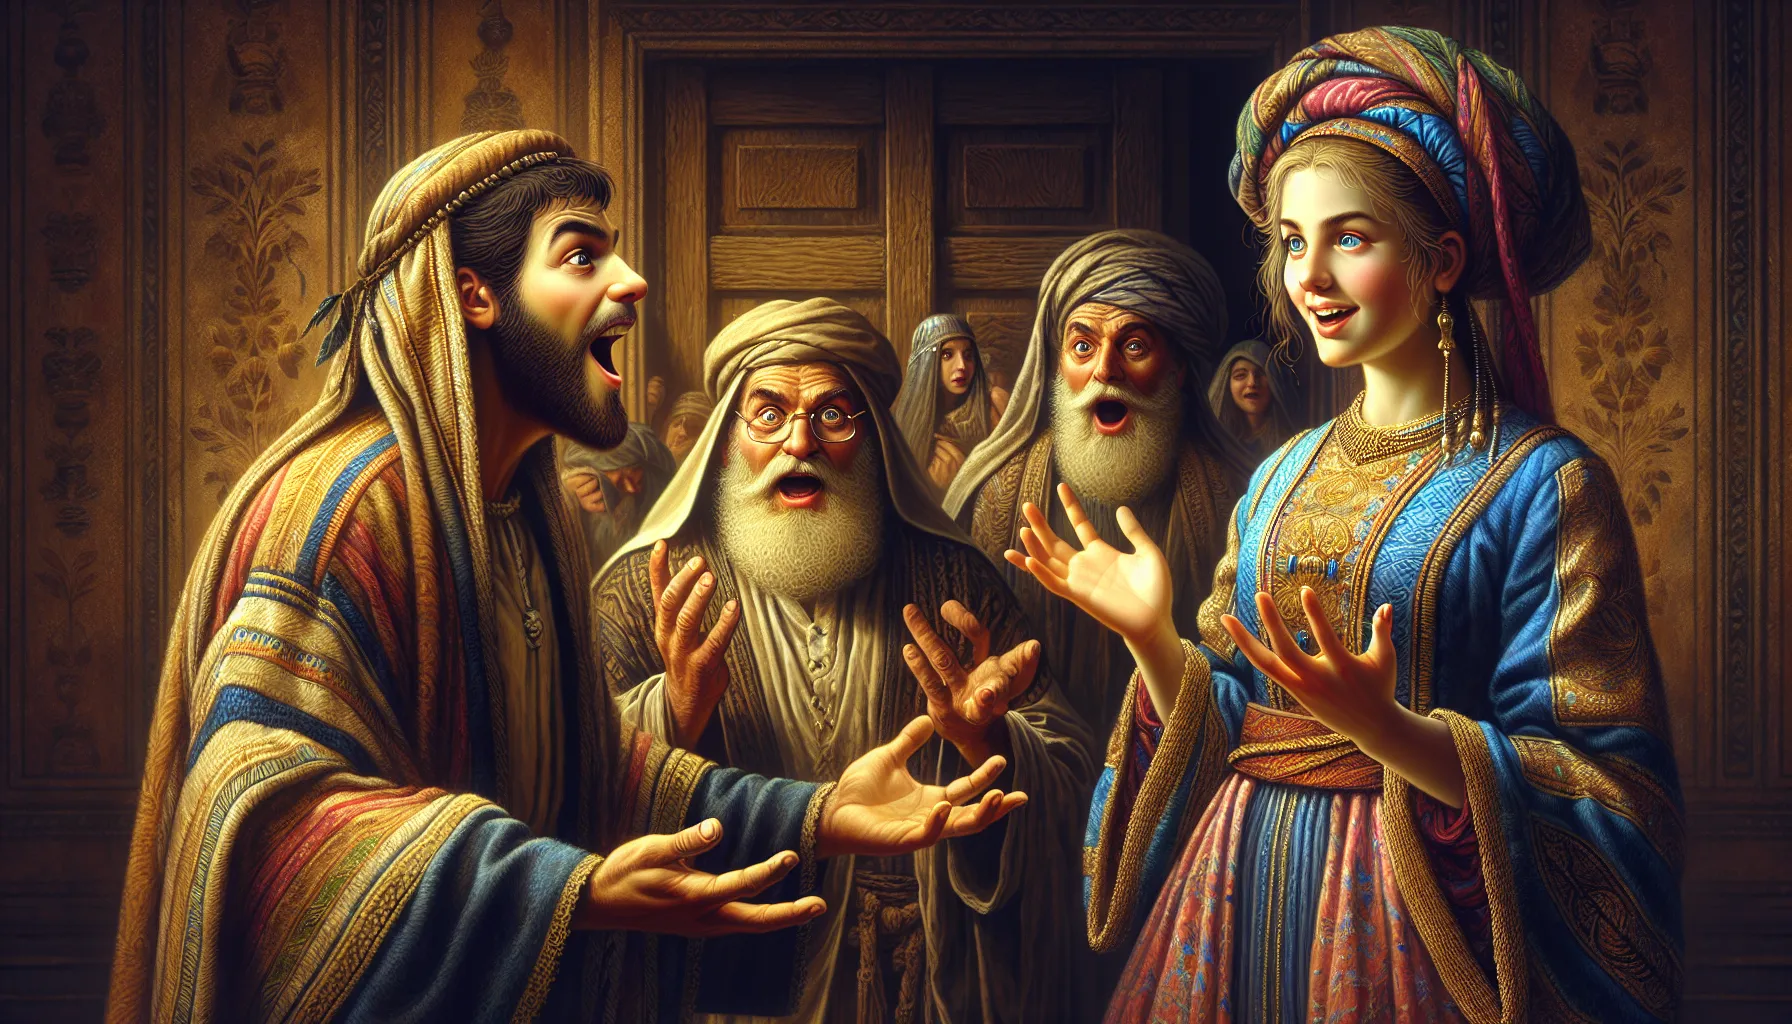 Representación artística de Jacob siendo engañado por Labán al casarse con Lea en lugar de Raquel, según la historia bíblica.